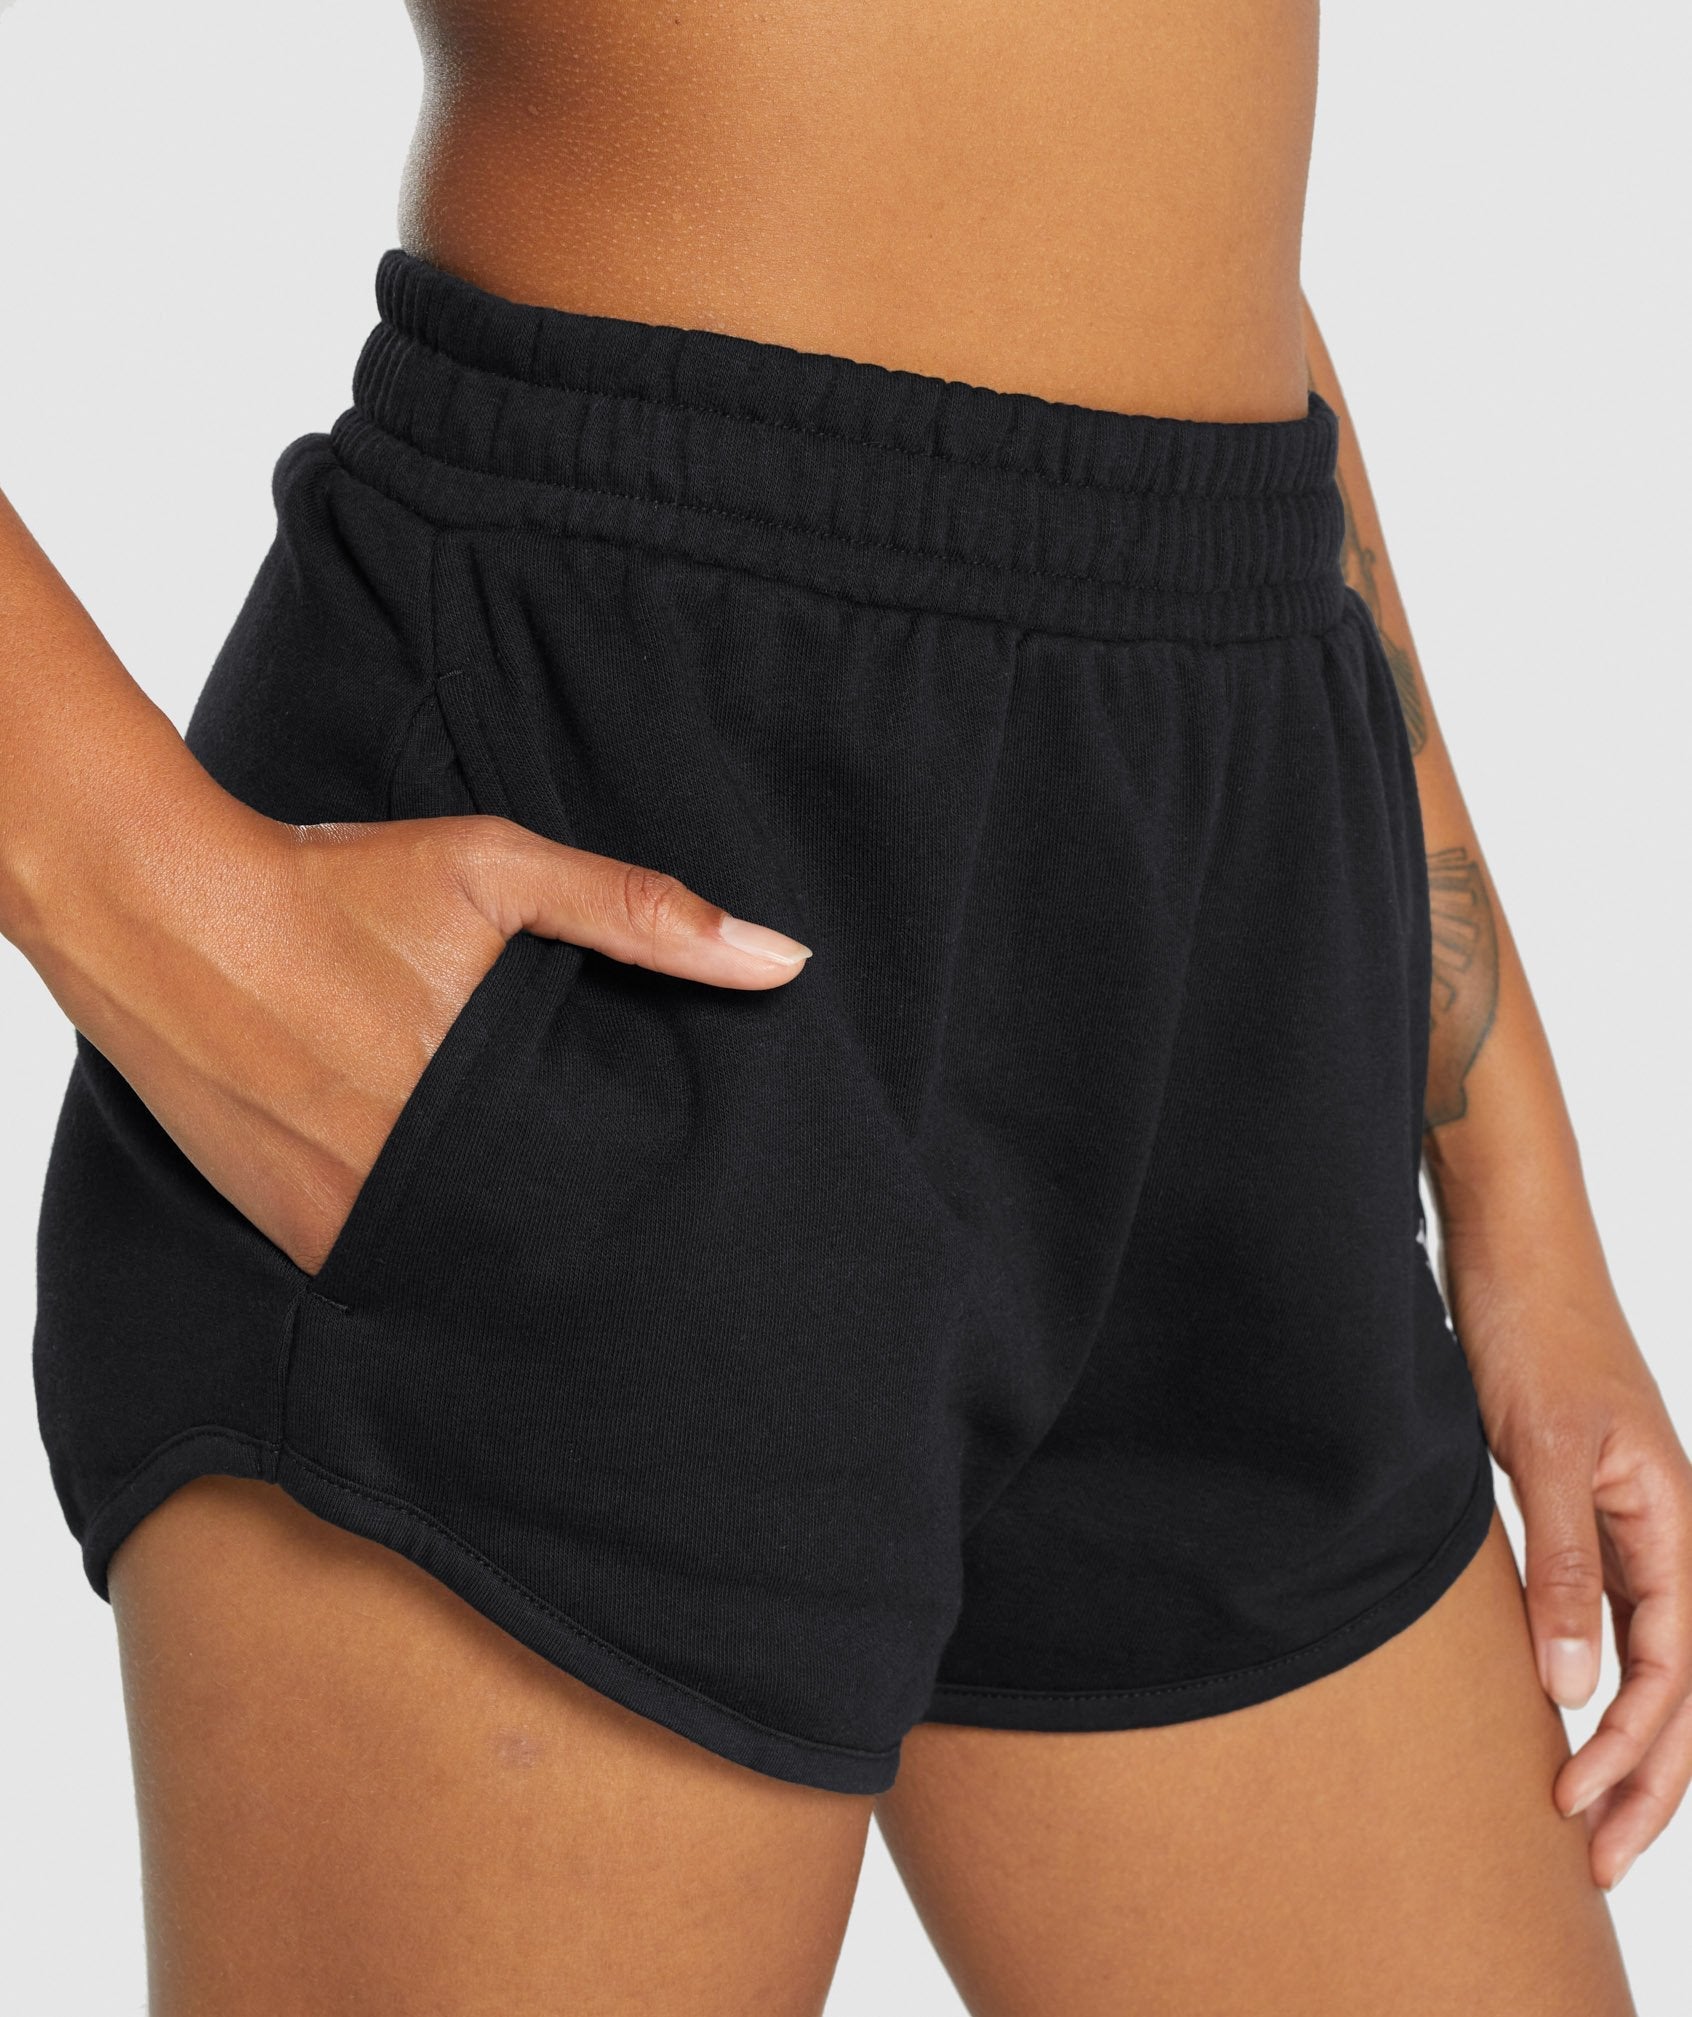 Gymshark Black Pull-on Shorts for Women